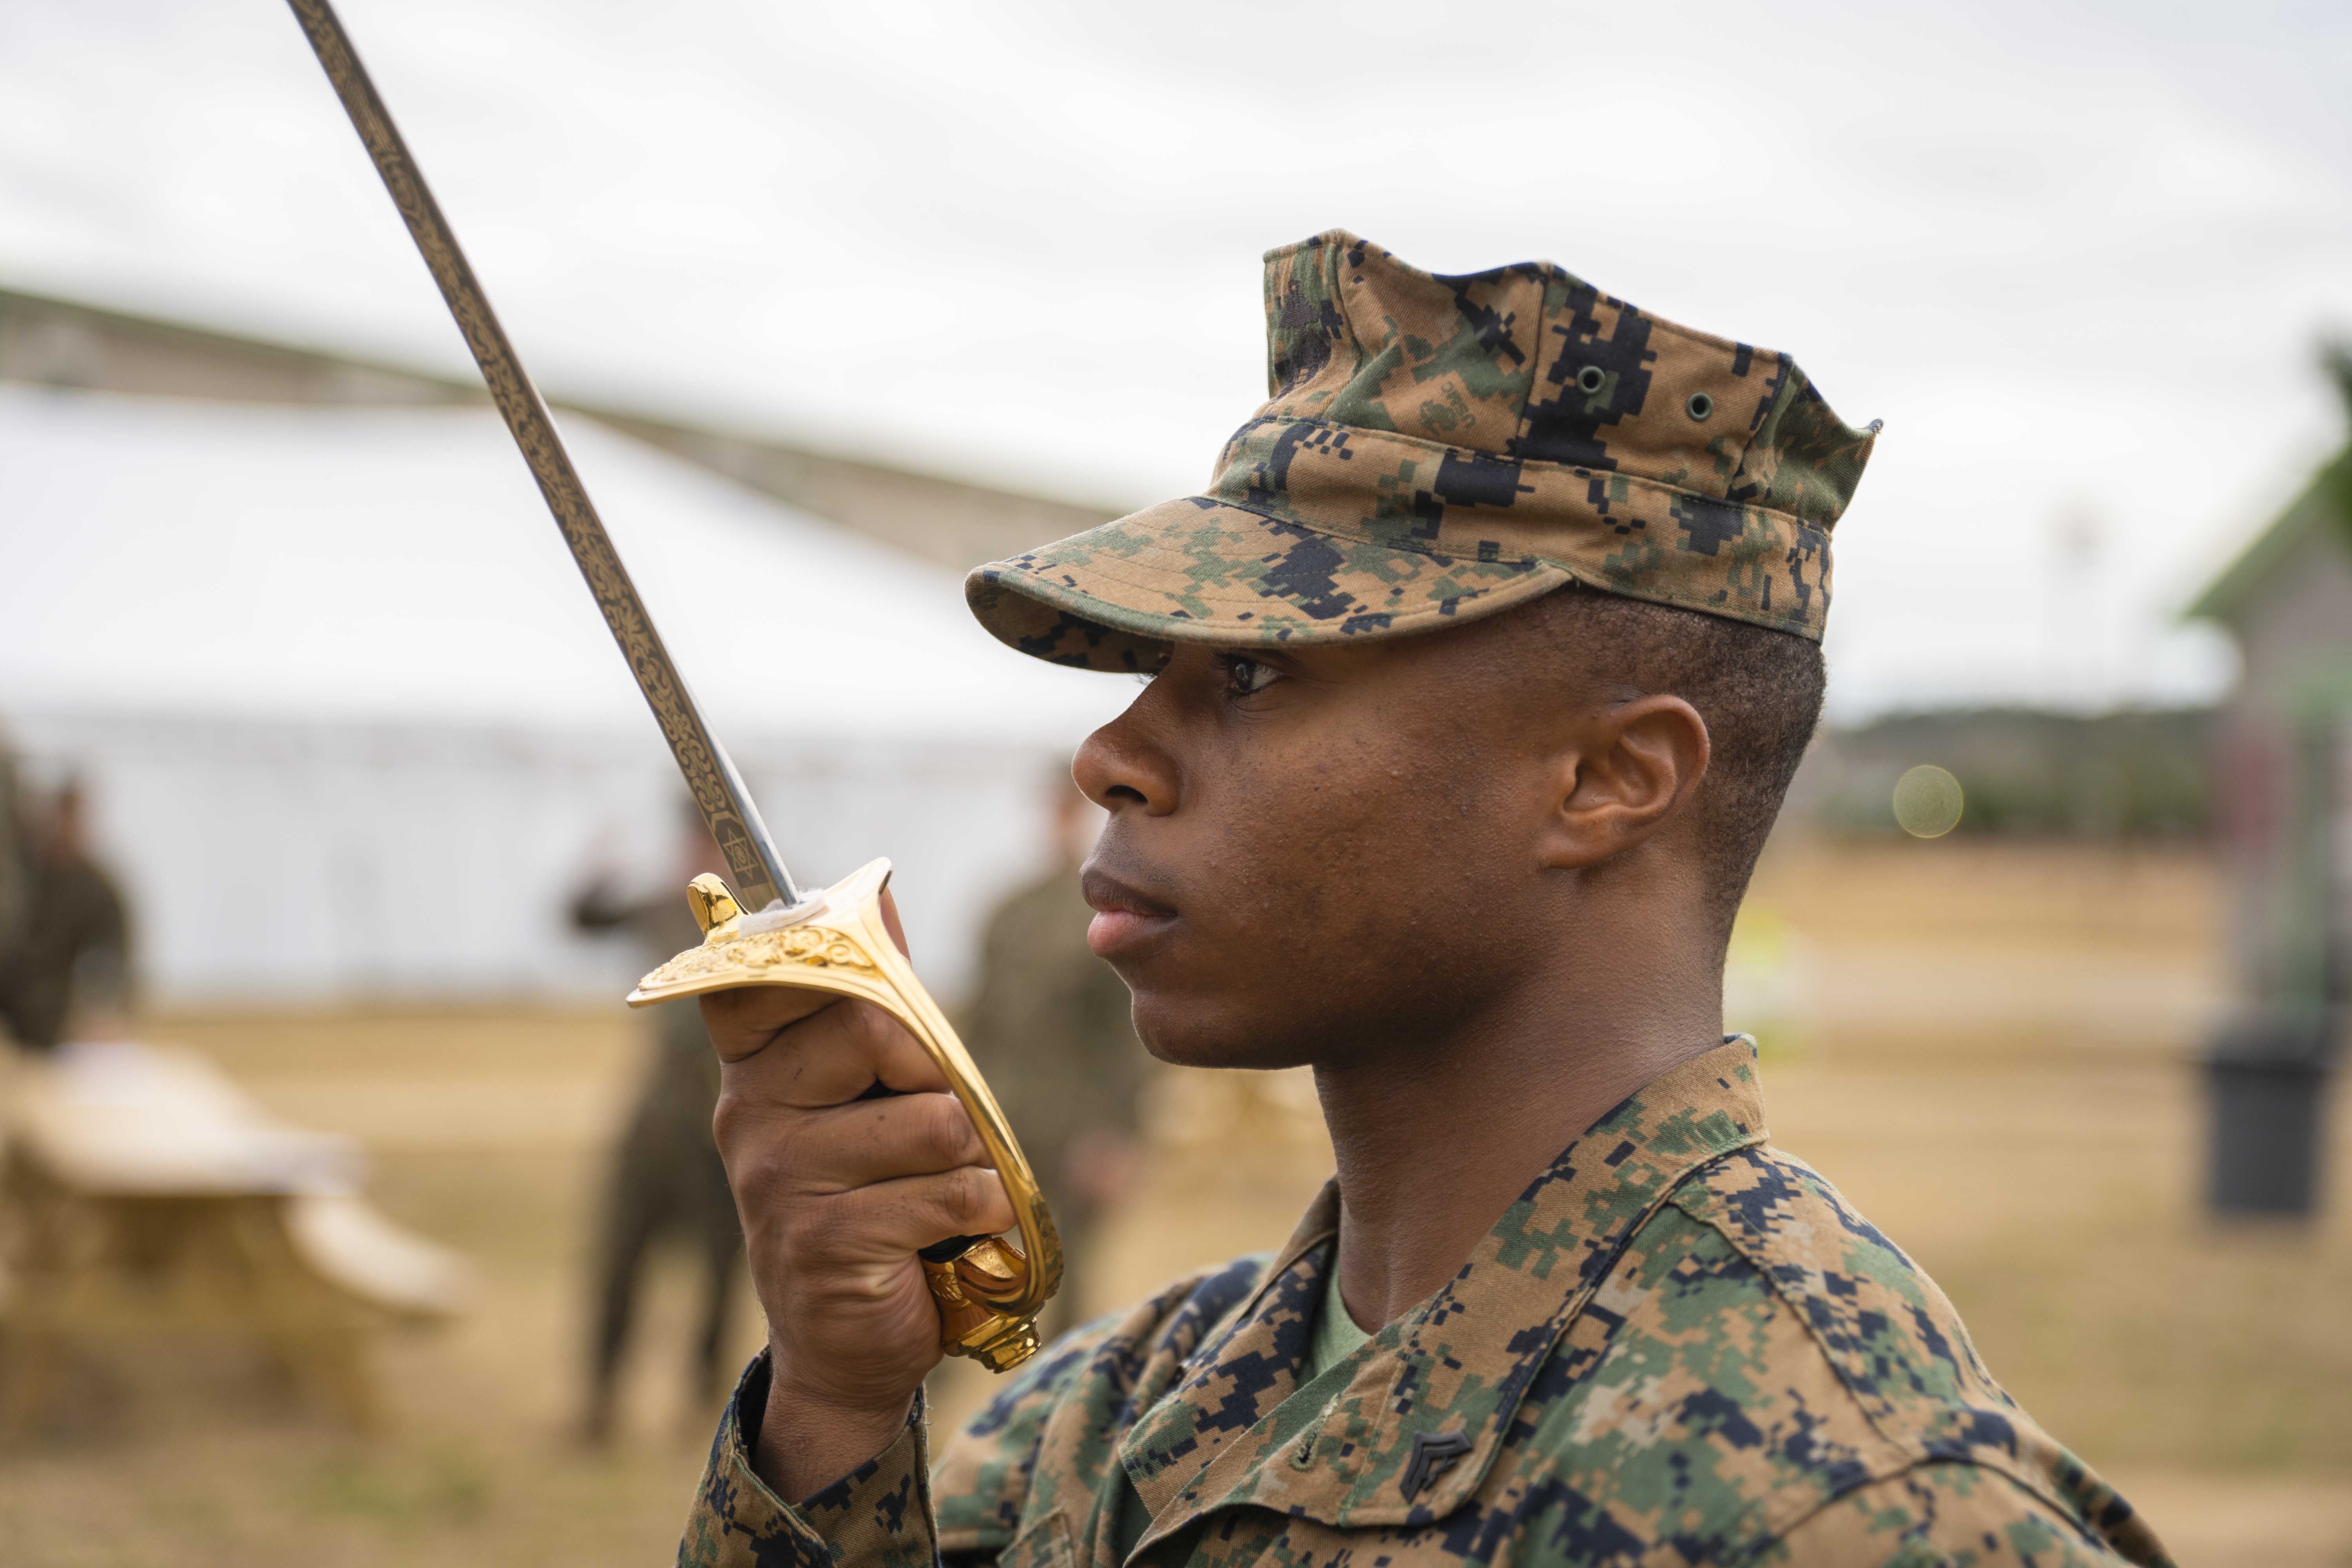 marine officer uniform sword